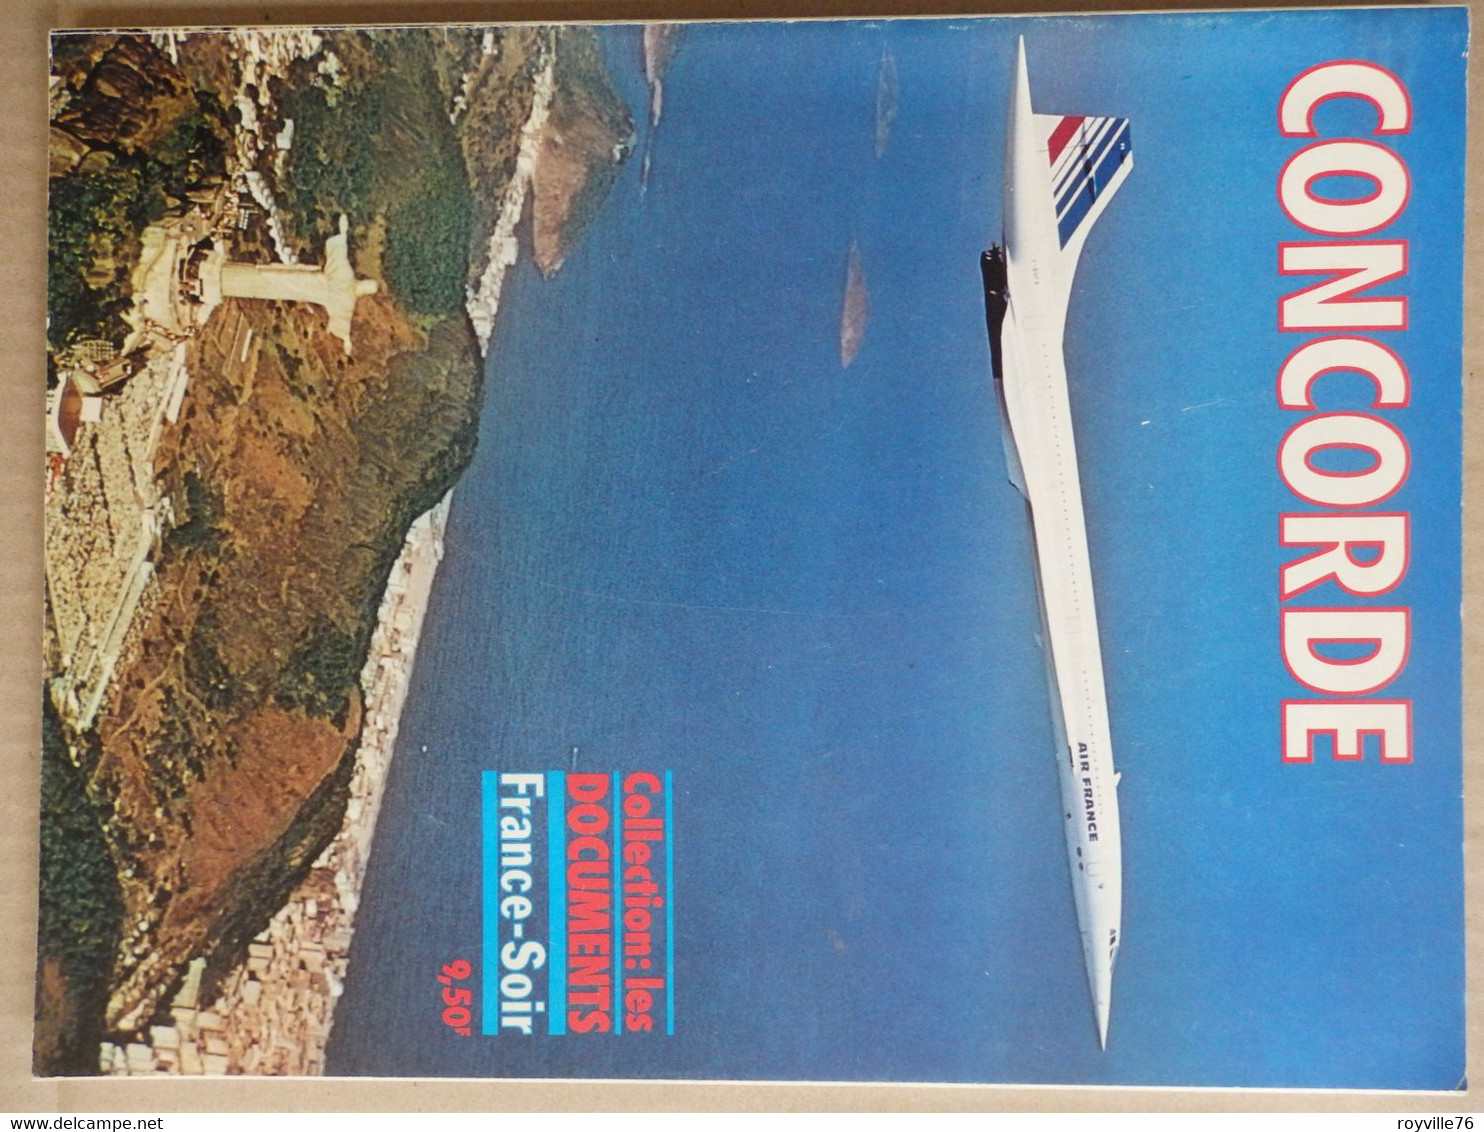 Edition Spécial France-Soir 66 P. Entièrement Dédié Au Concorde 1975 - Riviste Di Bordo